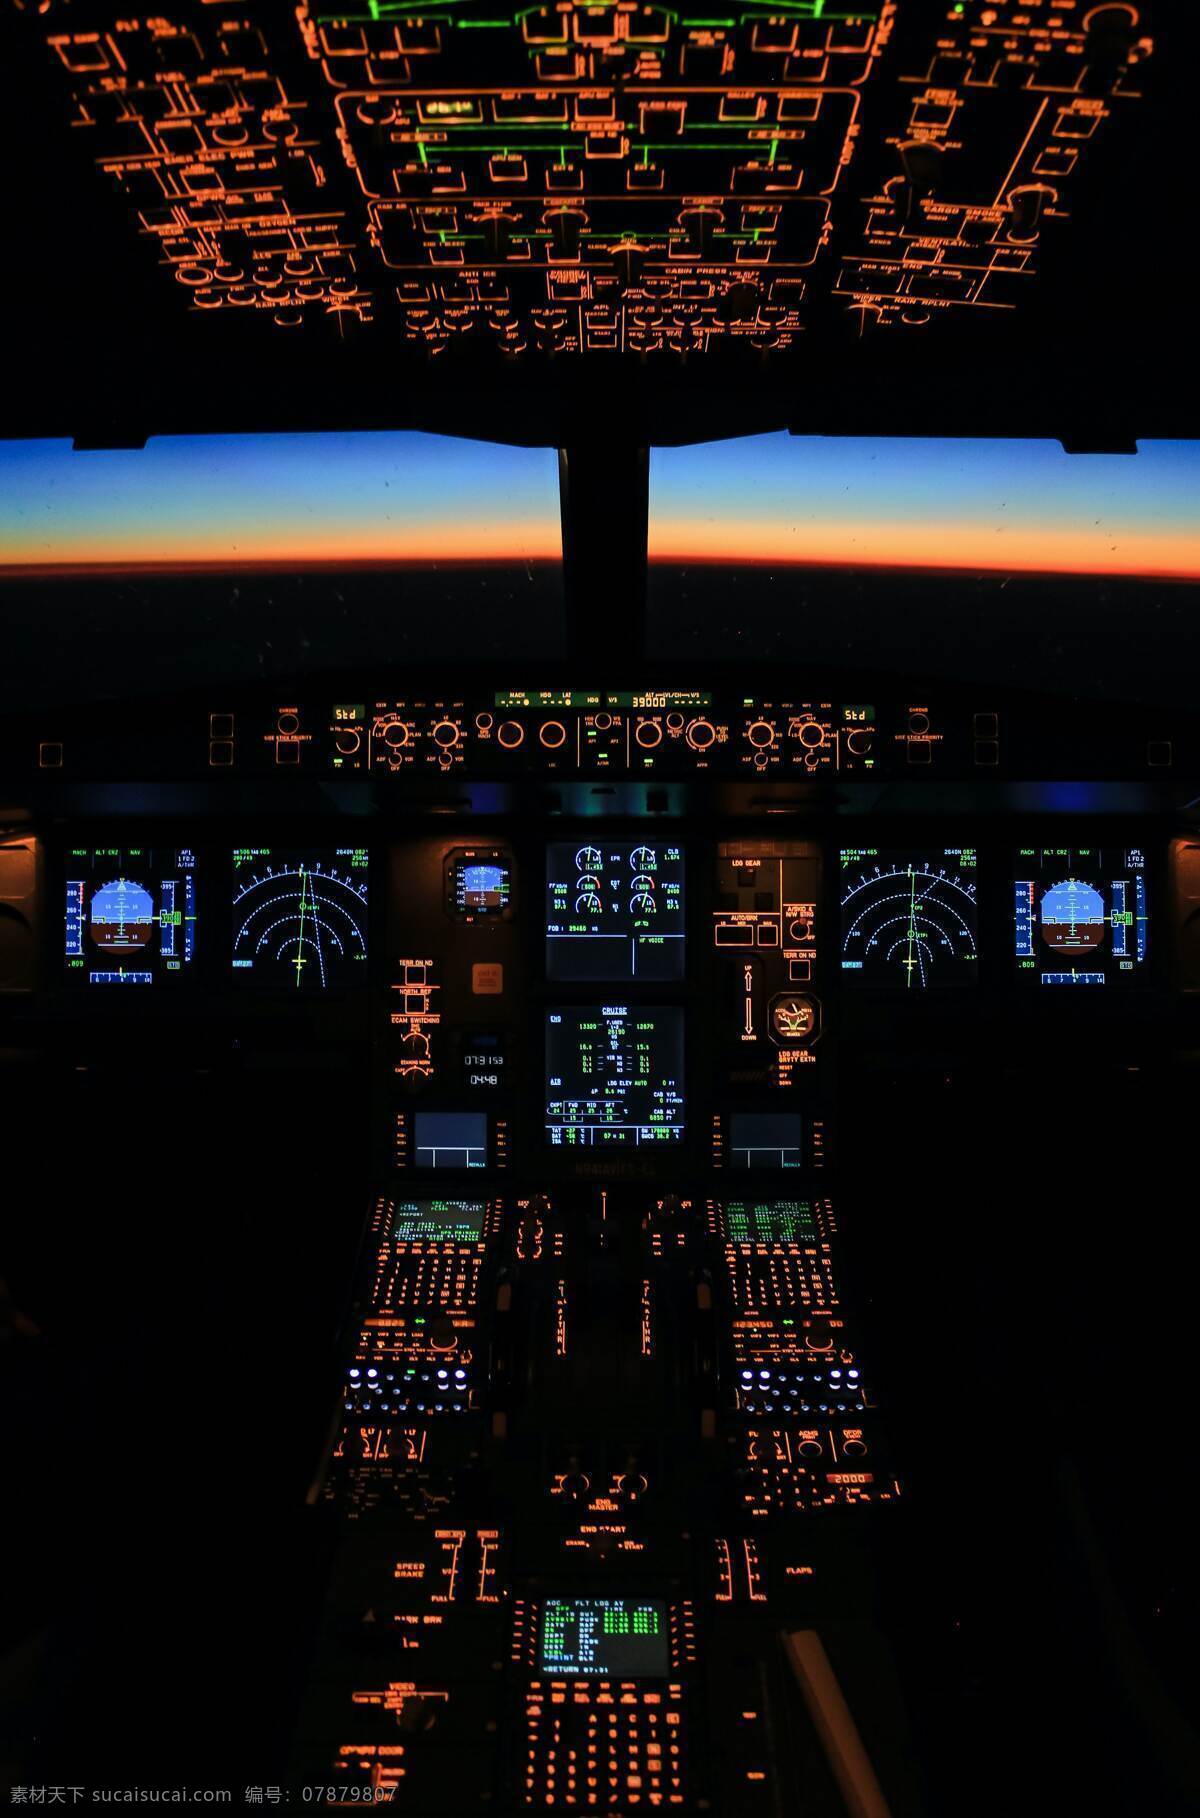 飞机驾驶舱 飞机 飞行 驾驶 驾驶室 驾驶舱 飞行台 现代科技 交通工具